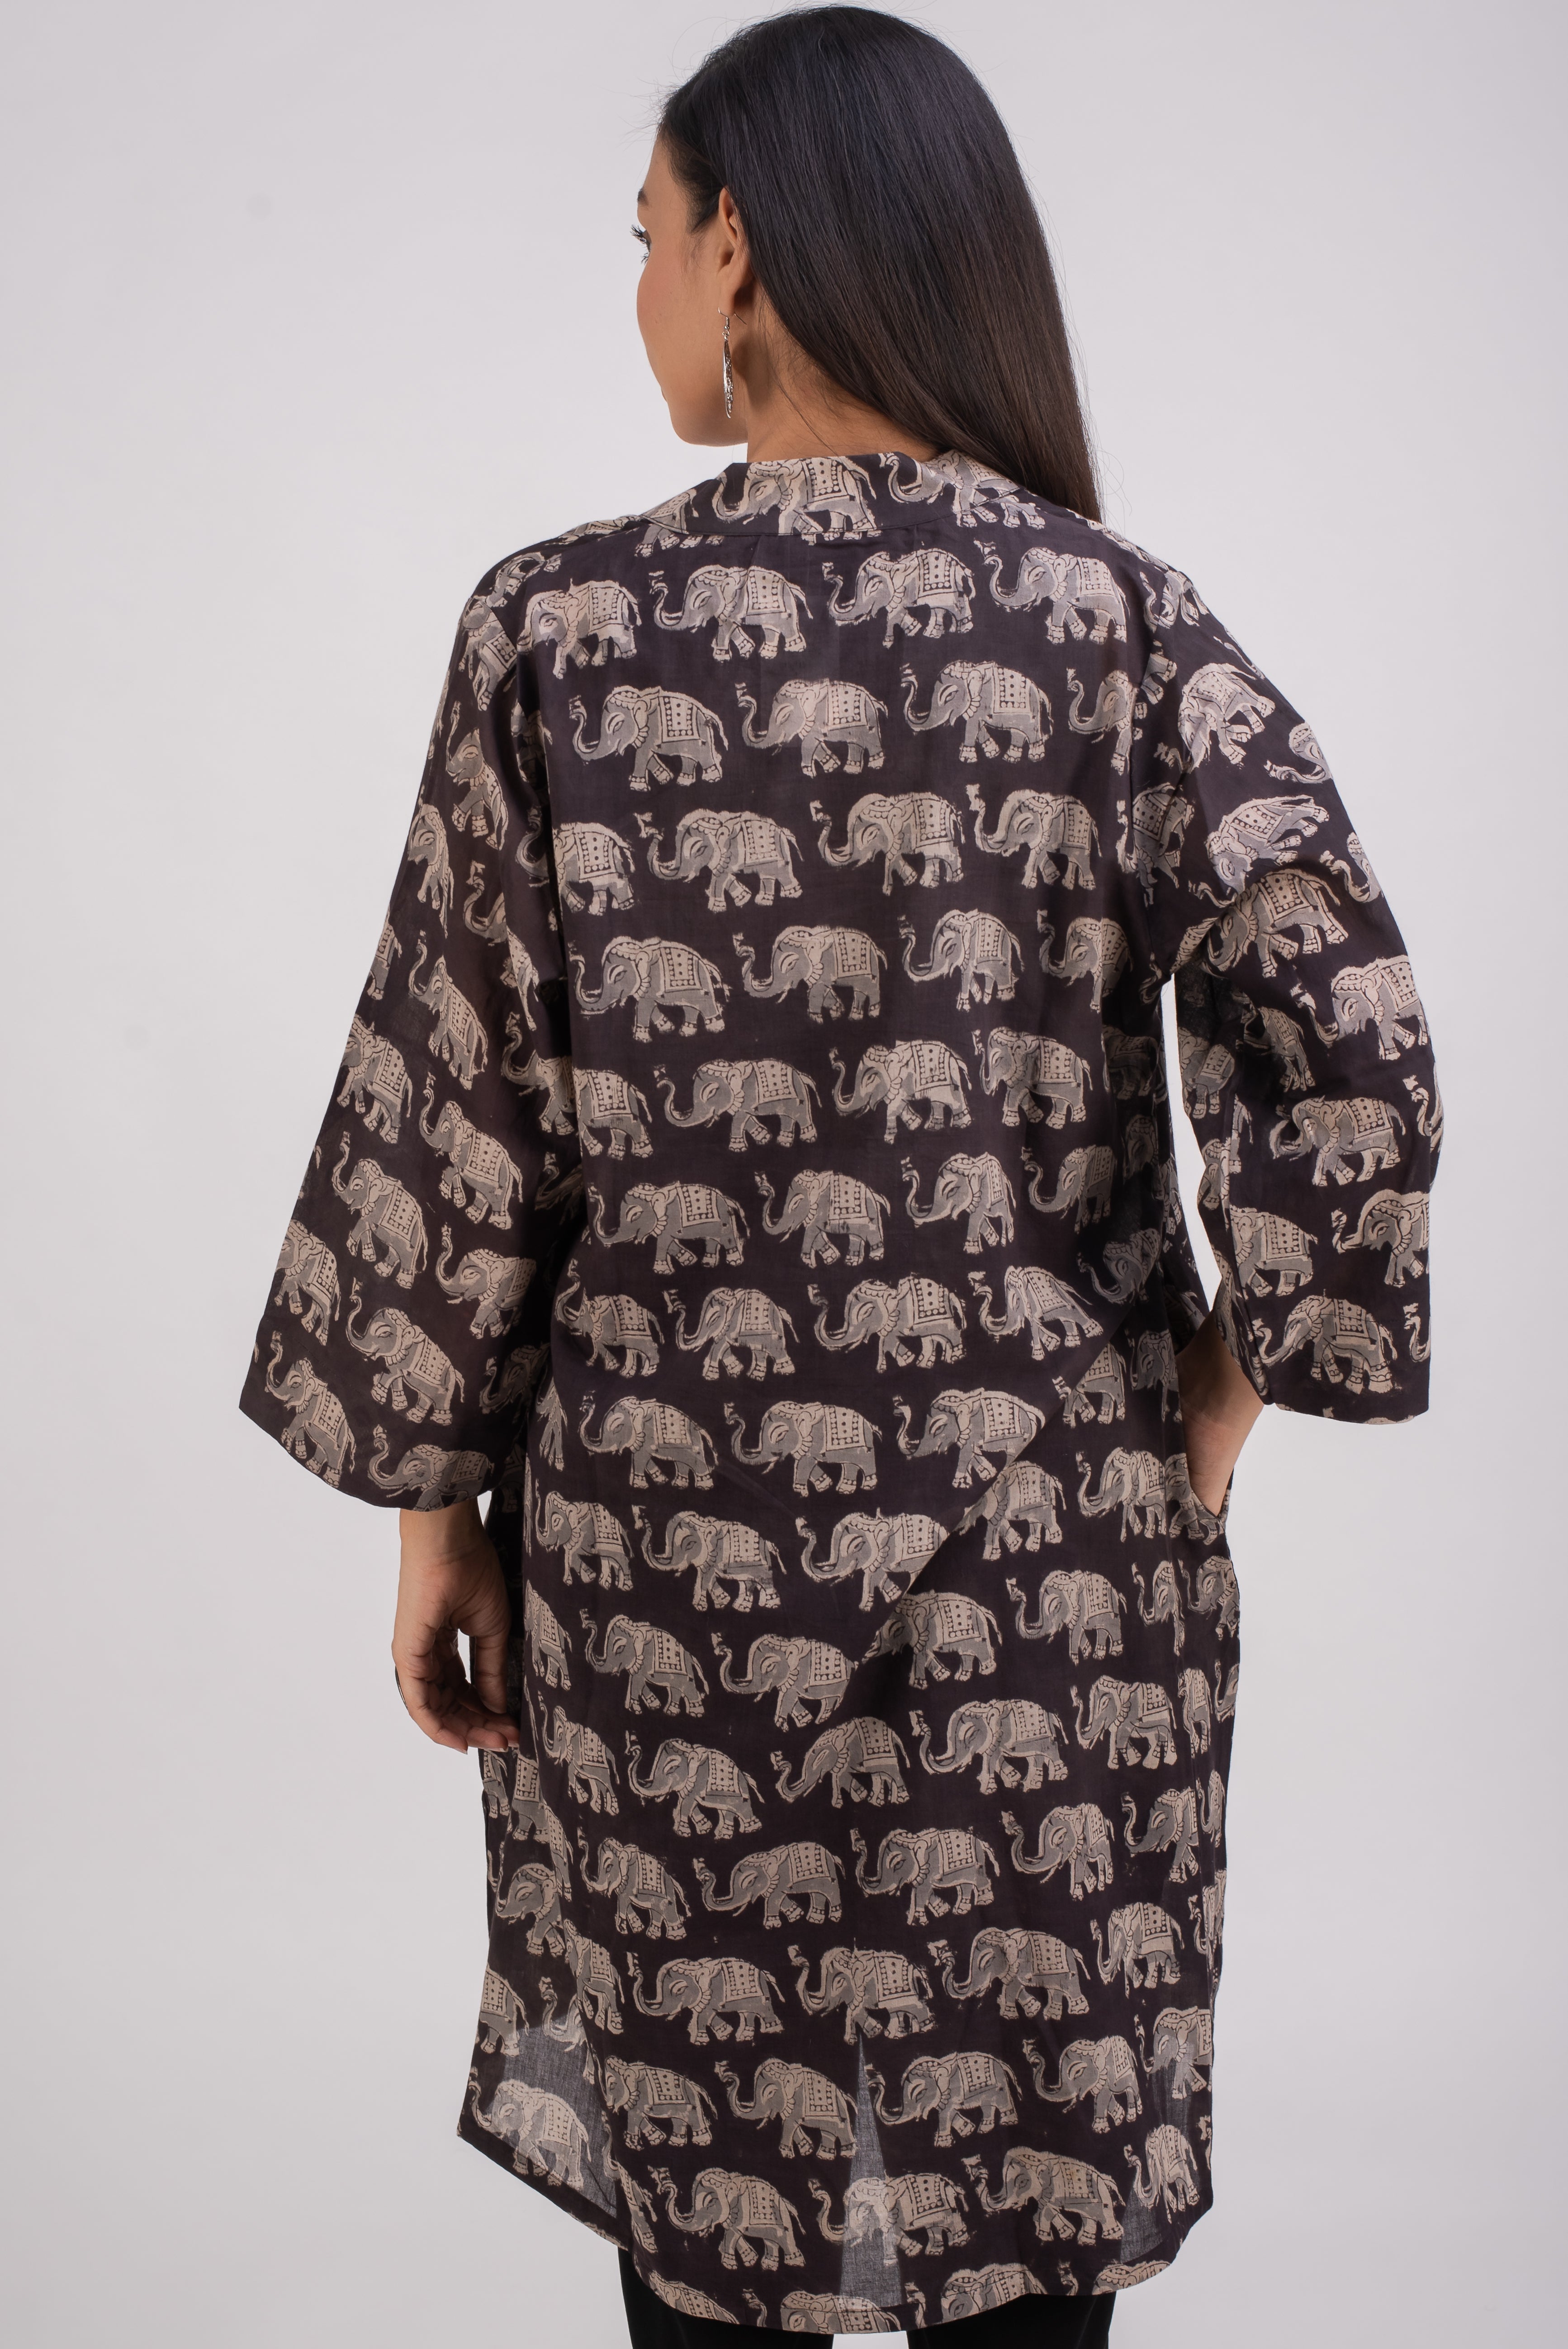 513- 111 Whitelotus "Kimono" Women's coat